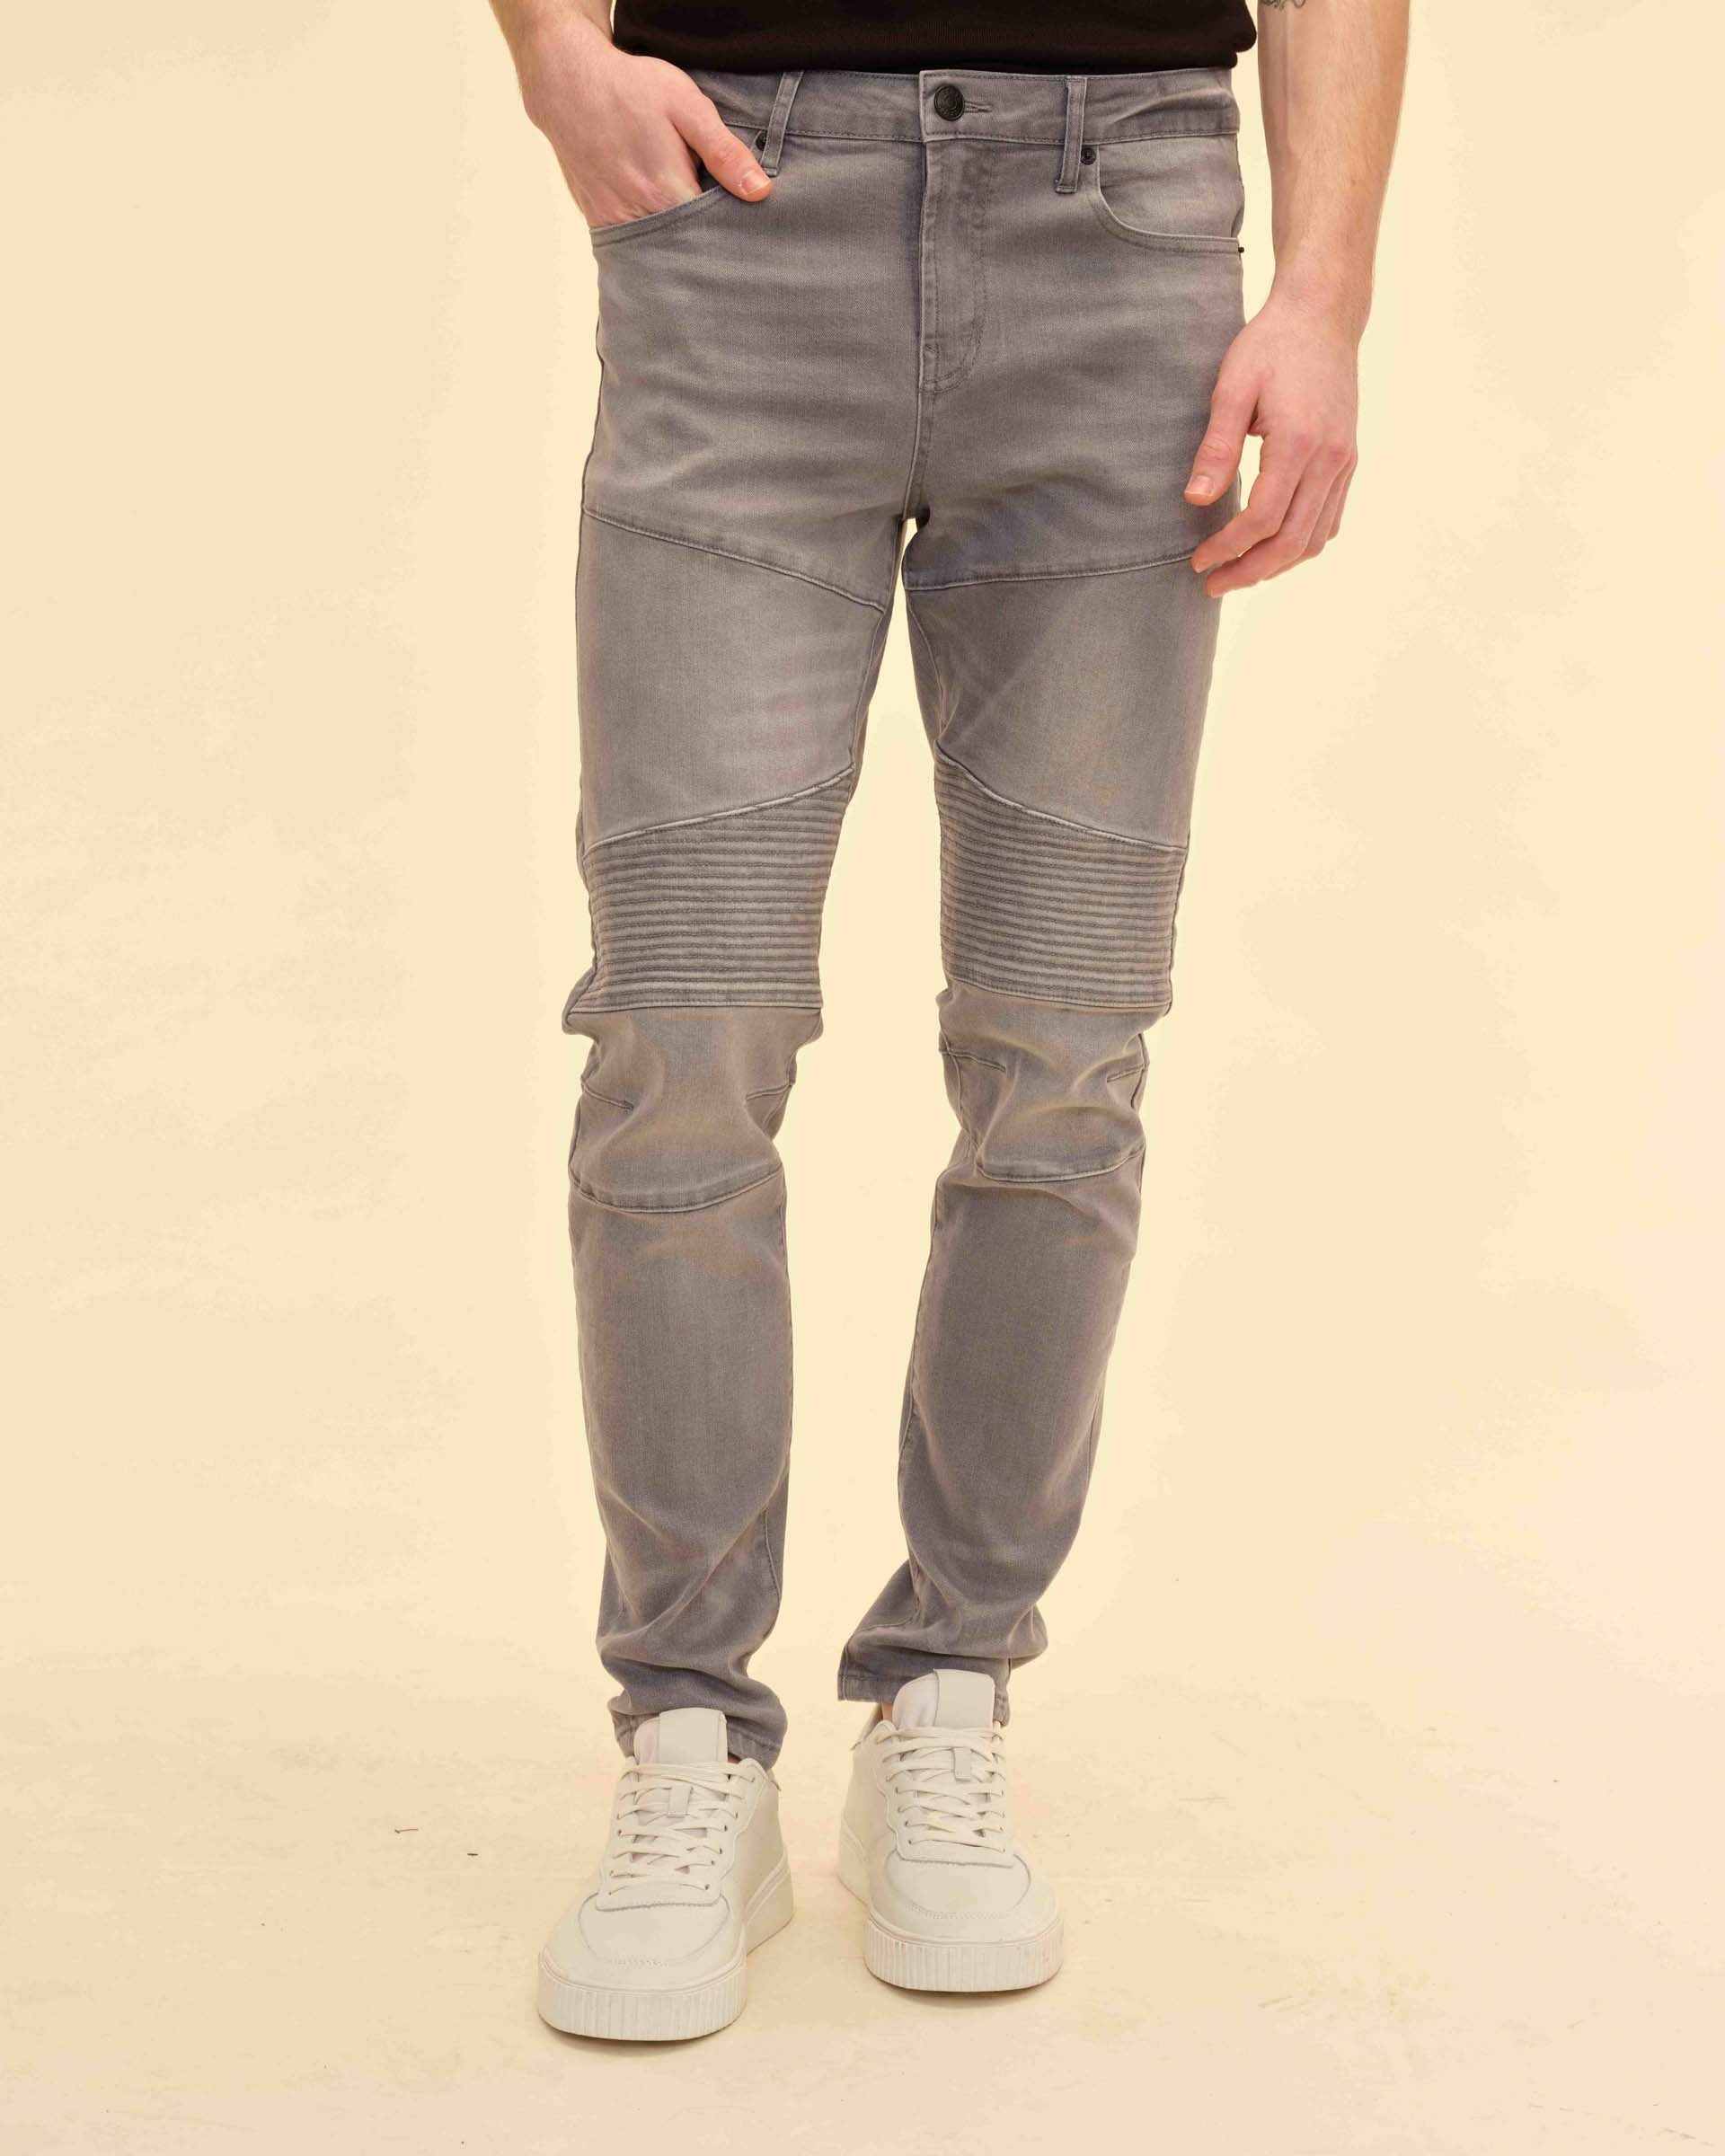 32 Inseam Stretch Fabric Slim Fit Jeans